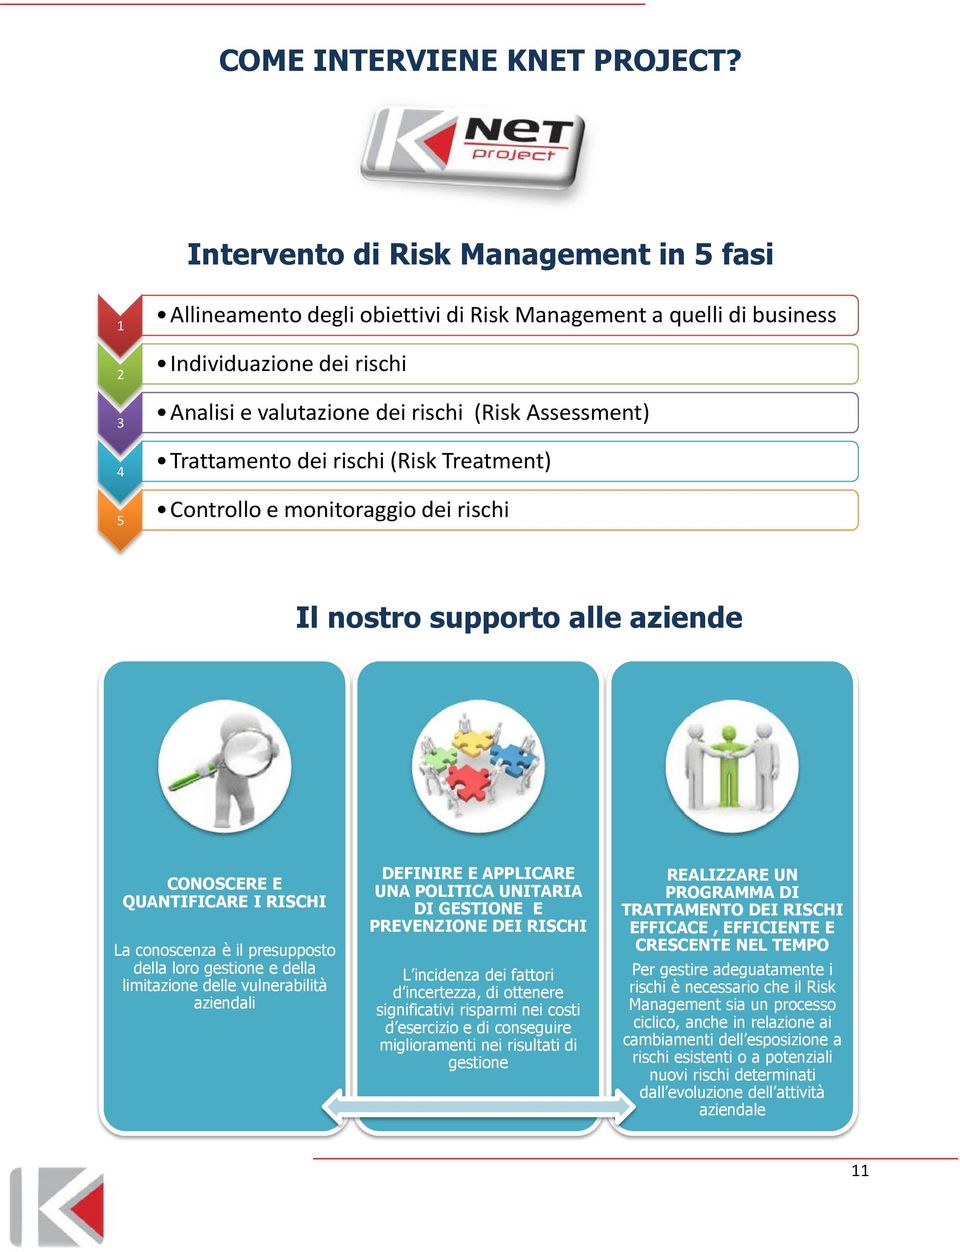 Trattamento dei rischi (Risk Treatment) 4 Controllo e monitoraggio dei rischi 5 Il nostro supporto alle aziende CONOSCERE E QUANTIFICARE I RISCHI La conoscenza è il presupposto della loro gestione e